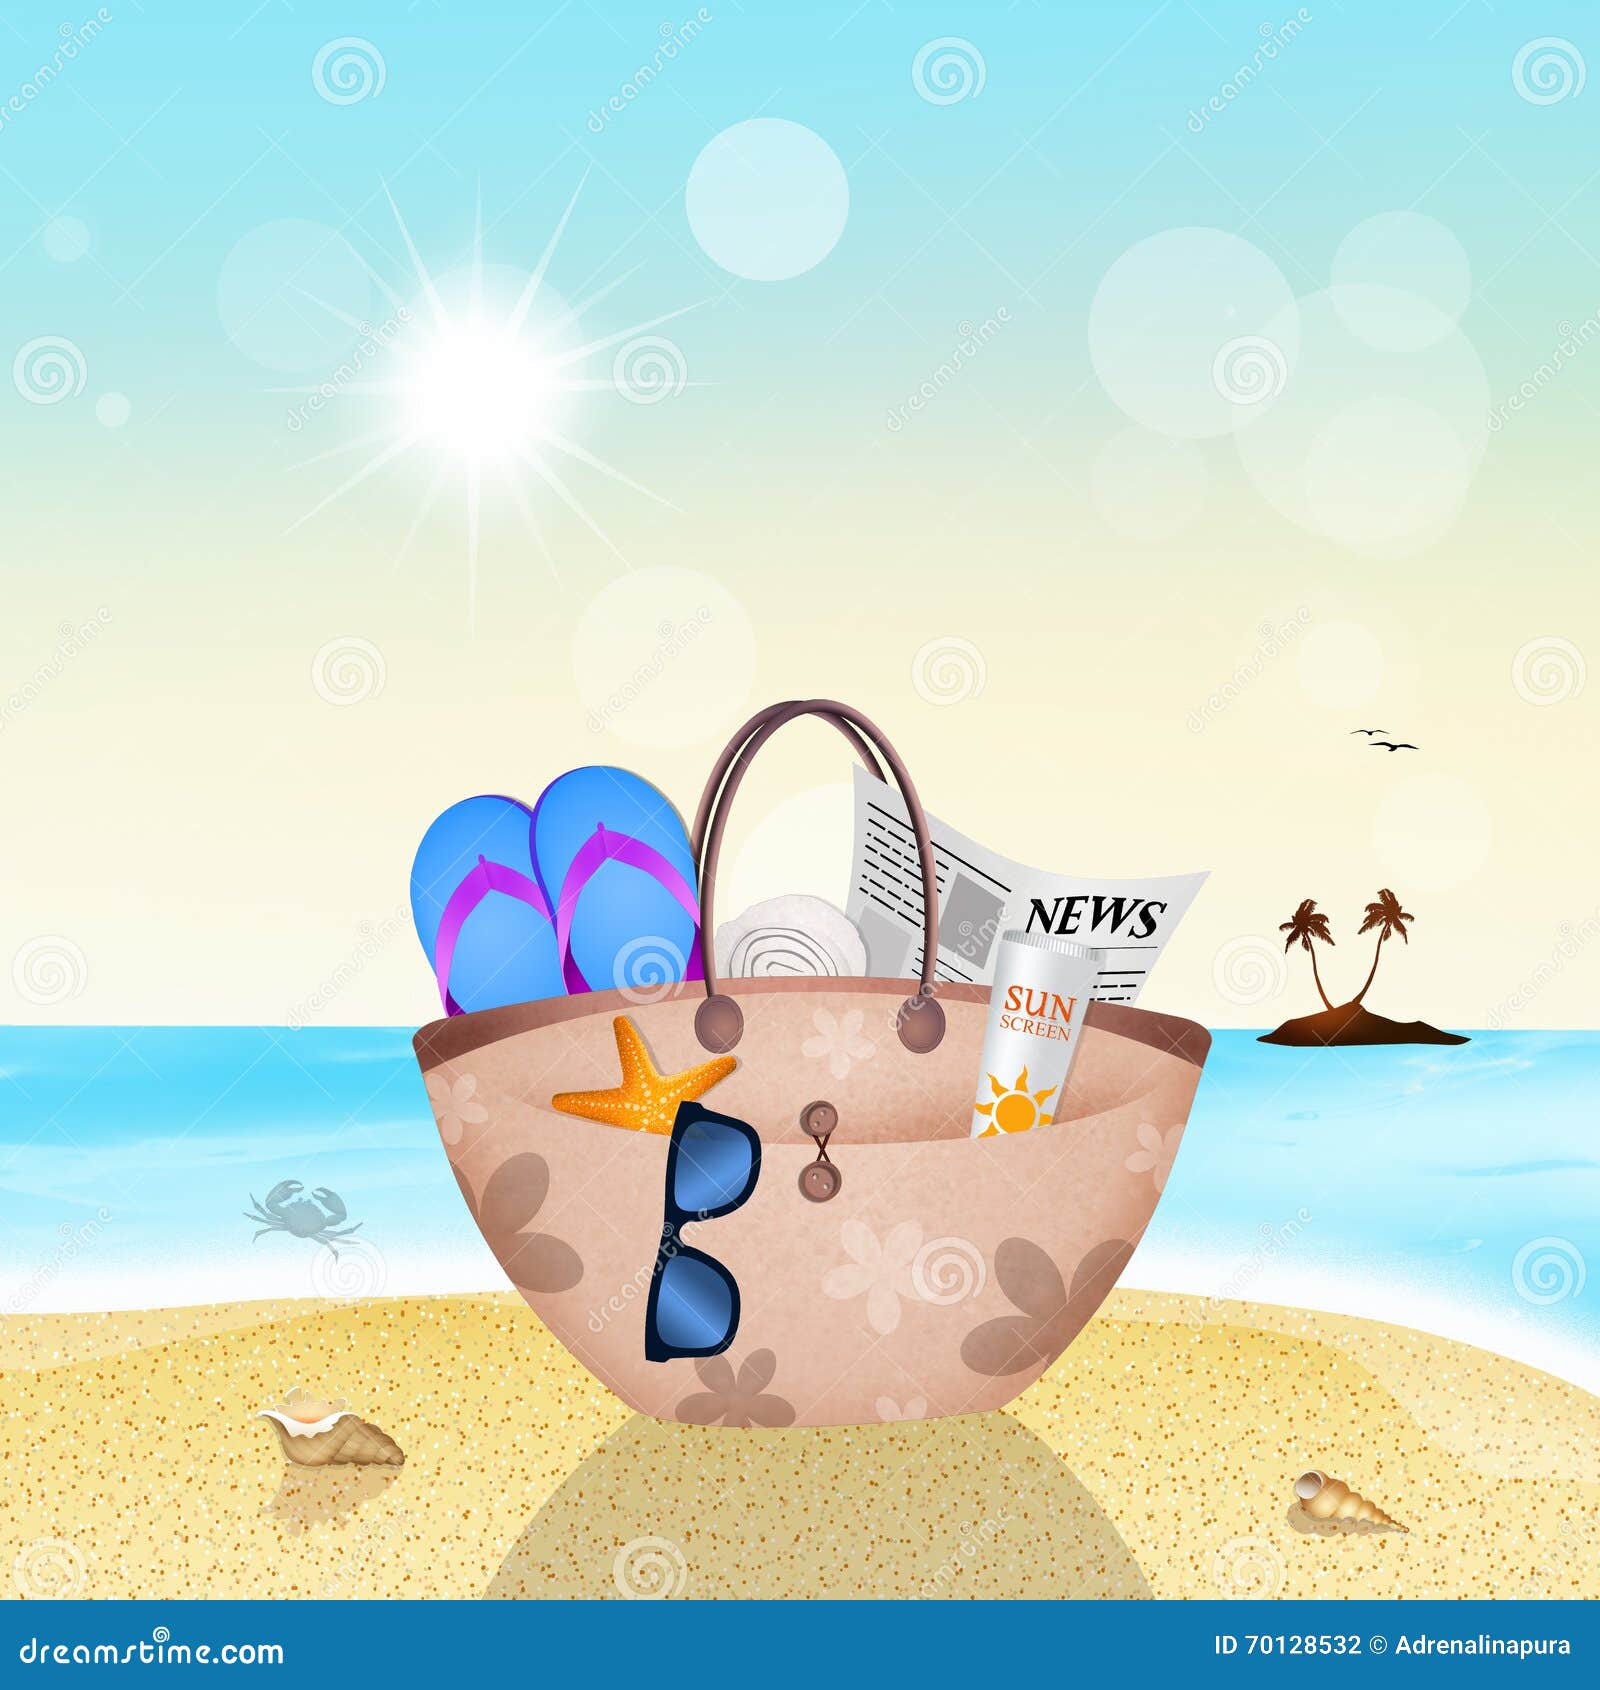 Beach bag in summer stock illustration. Illustration of journal - 70128532